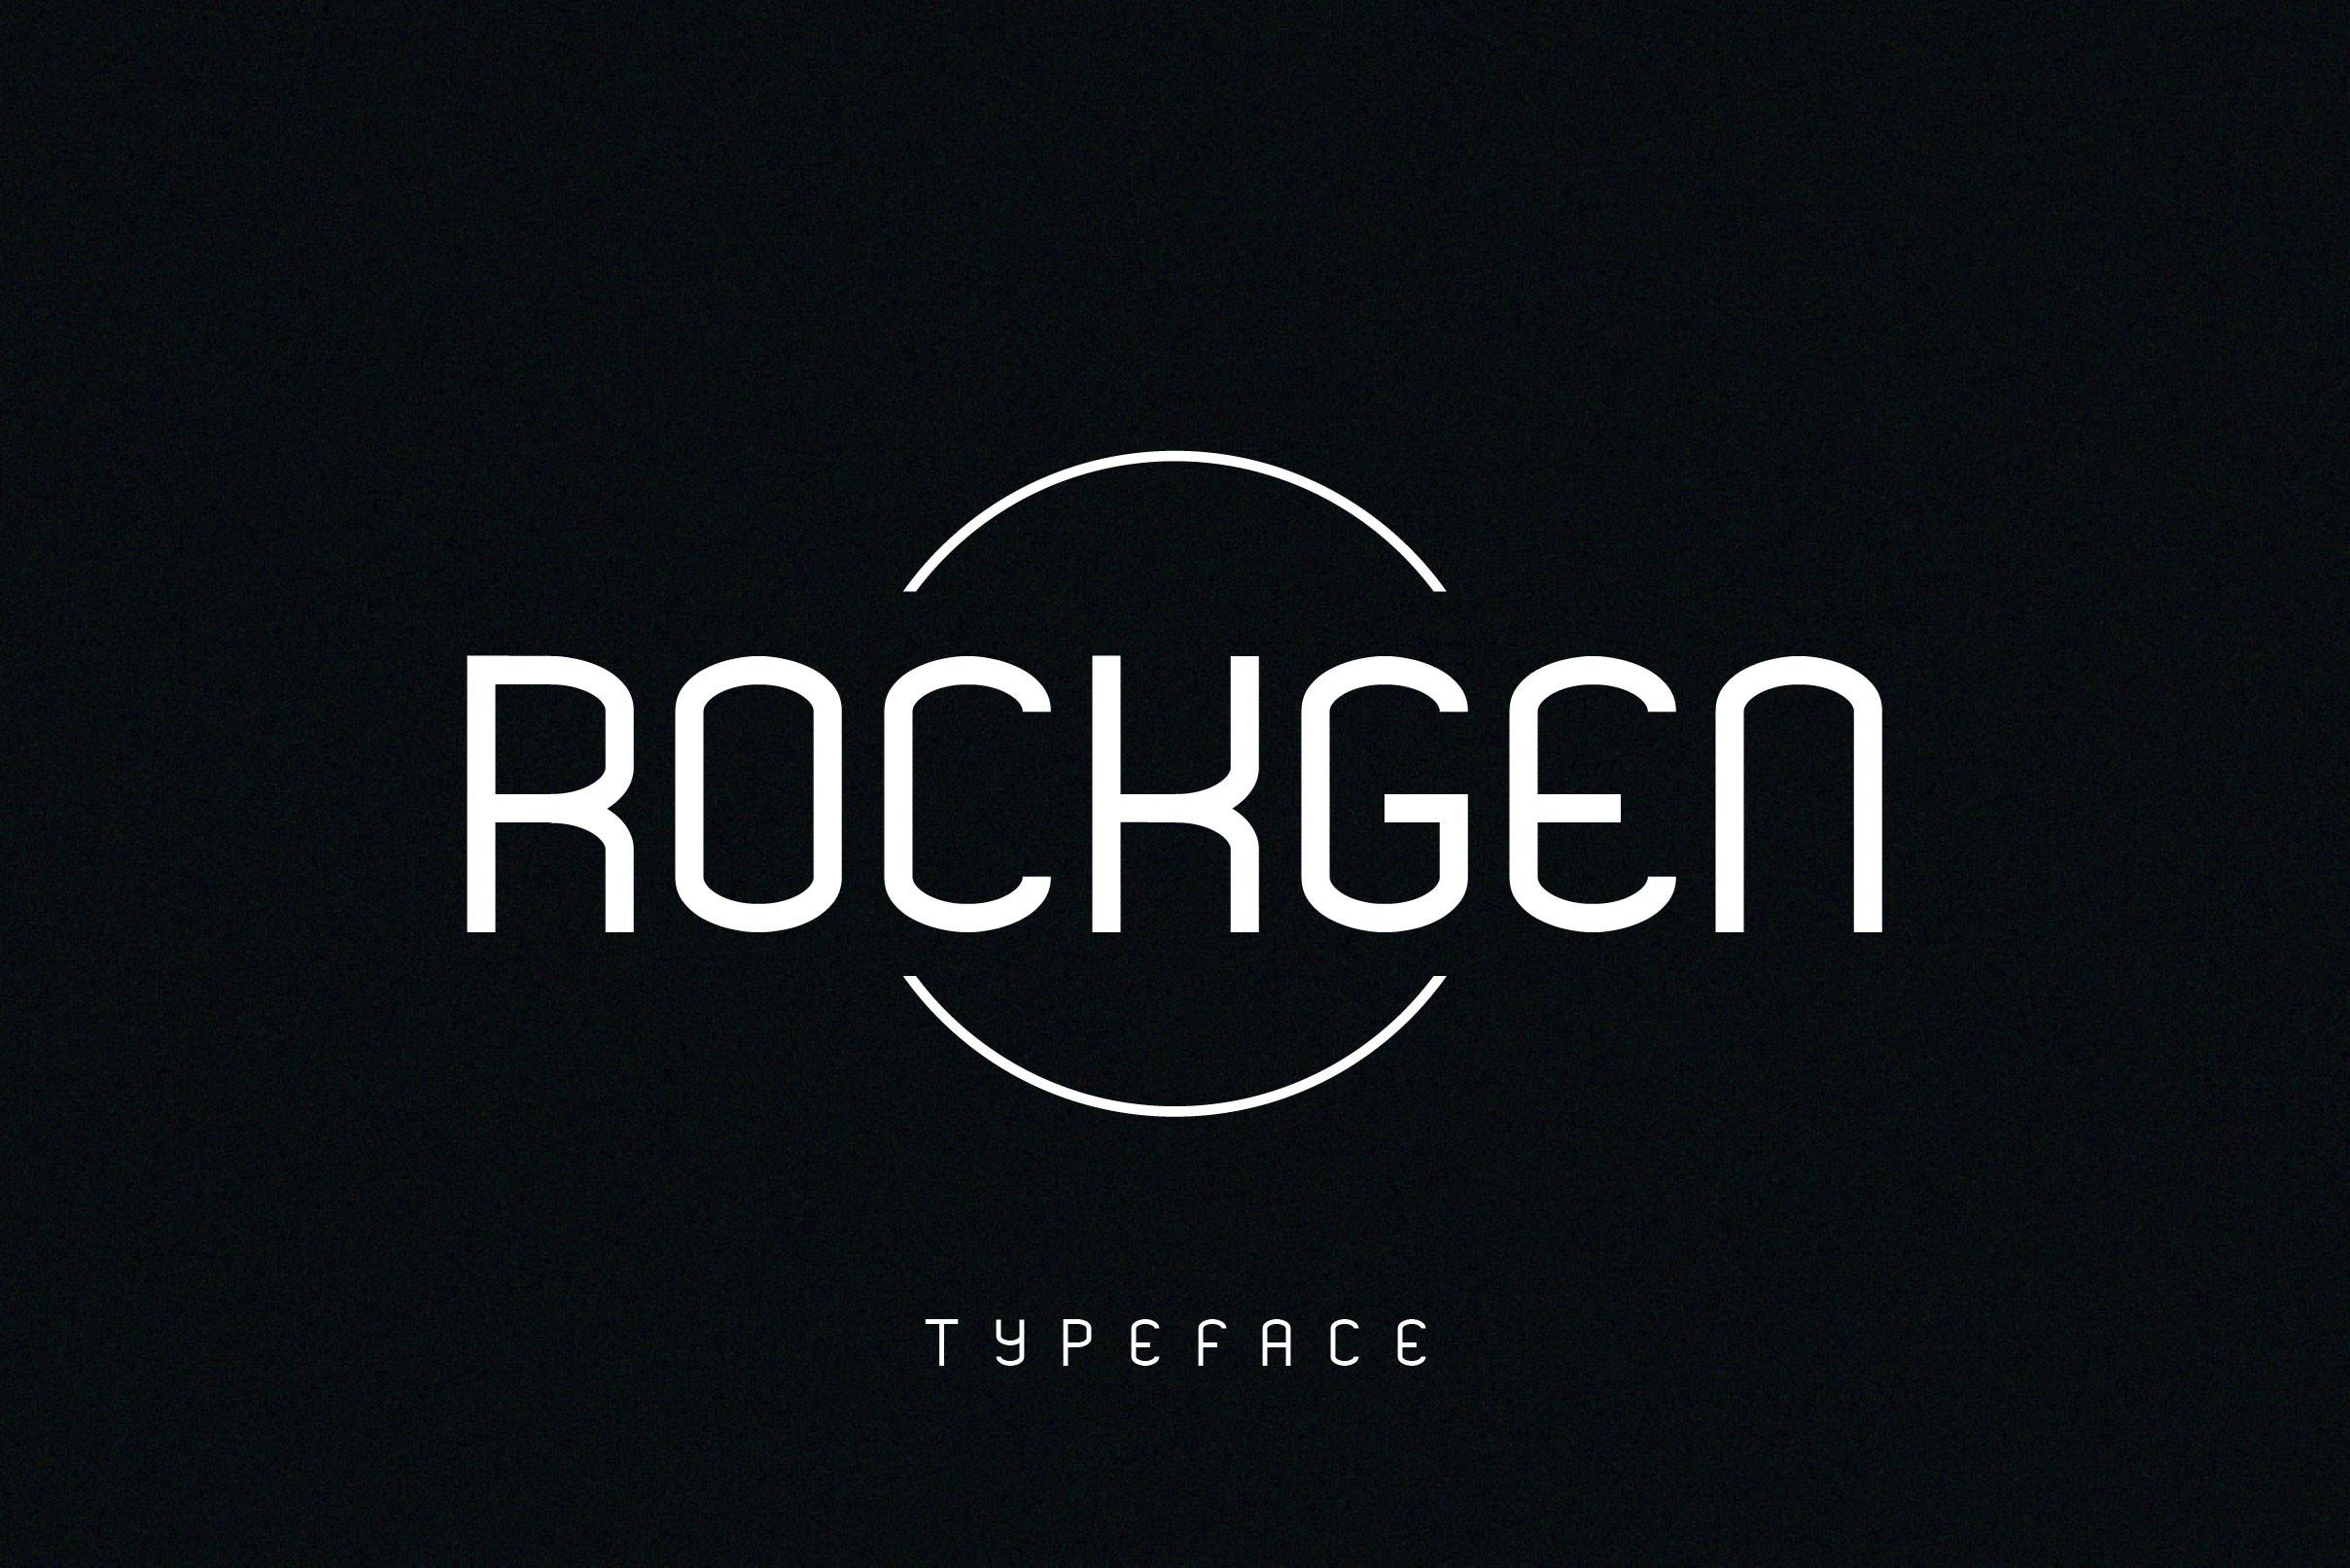 Rockgen Font